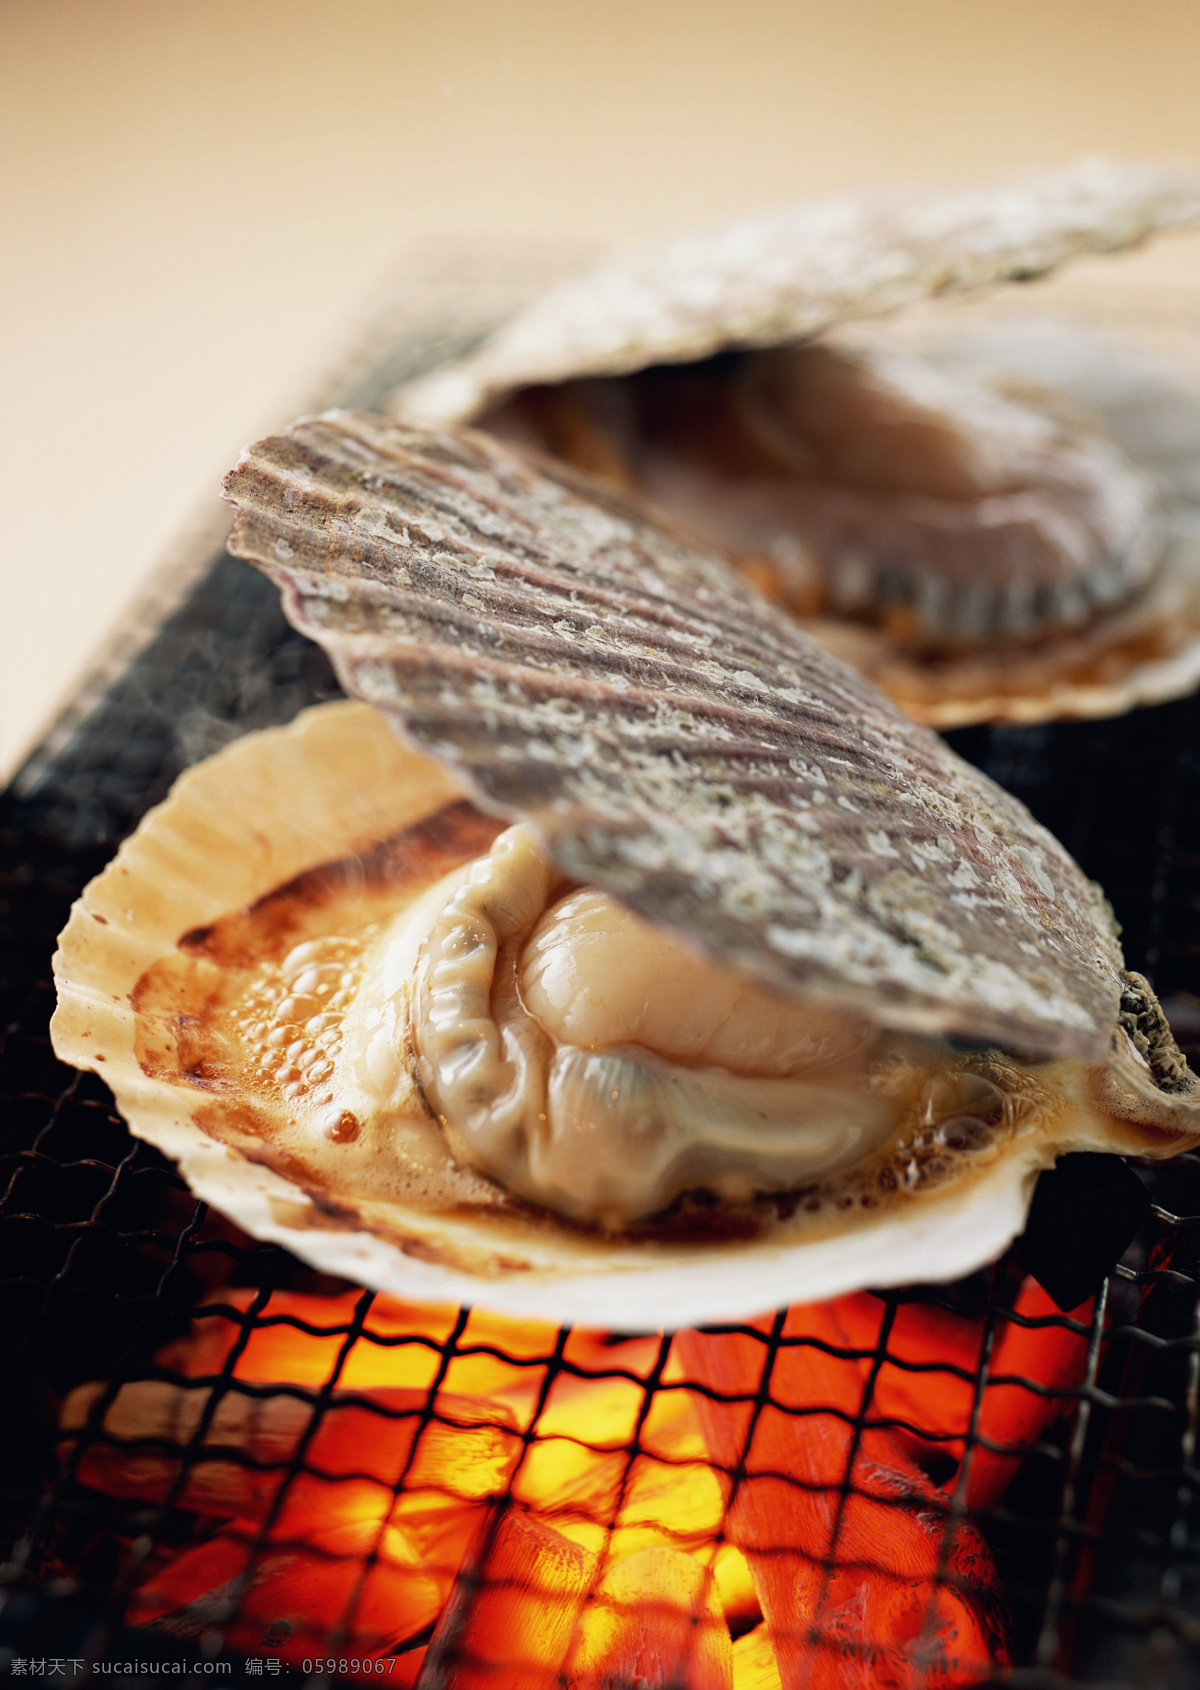 海鲜烧烤 唯美 食物 食品 美食 美味 营养 健康 烧烤 烤肉 海鲜 扇贝 餐饮美食 传统美食